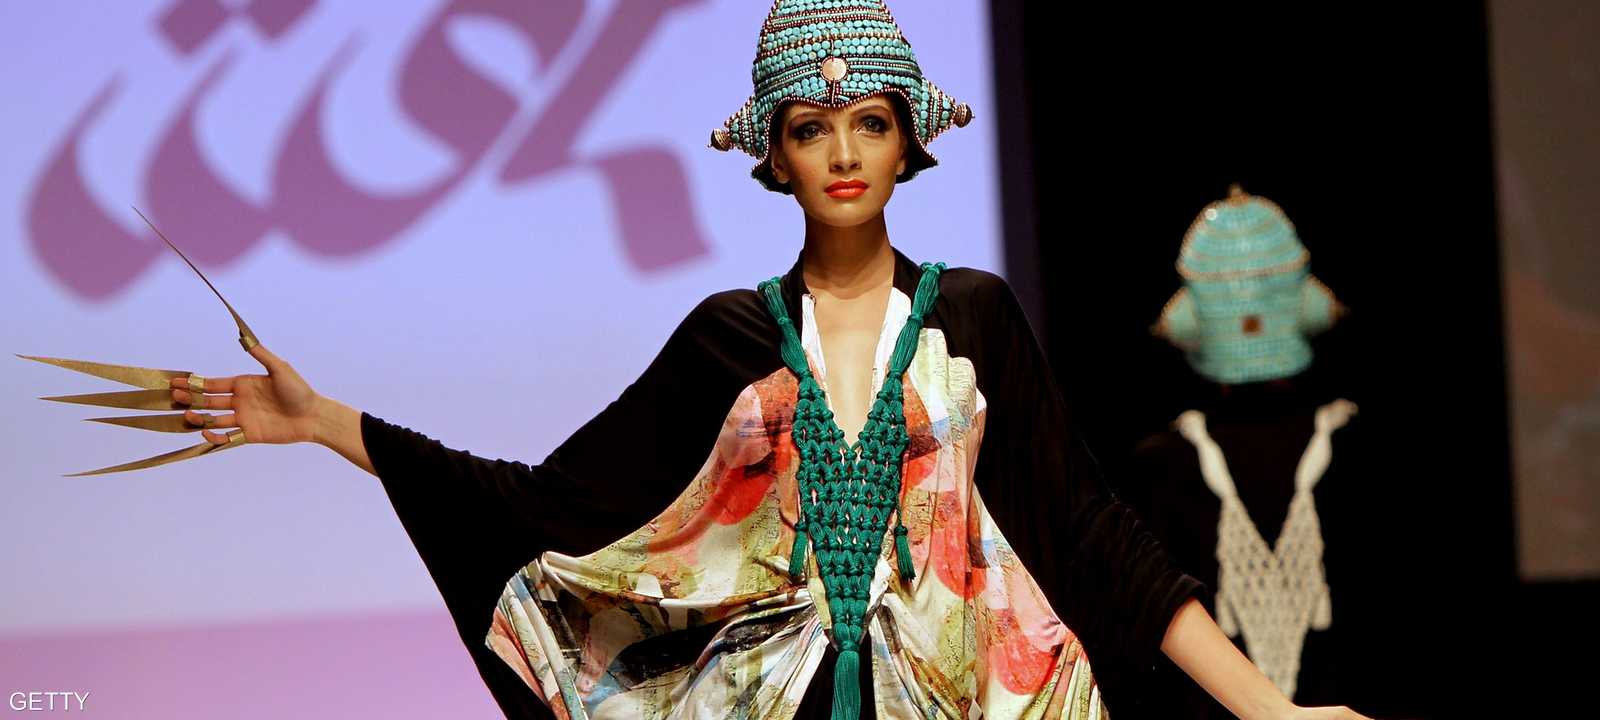 جانب من أسبوع الموضة في دبي عام 2010.